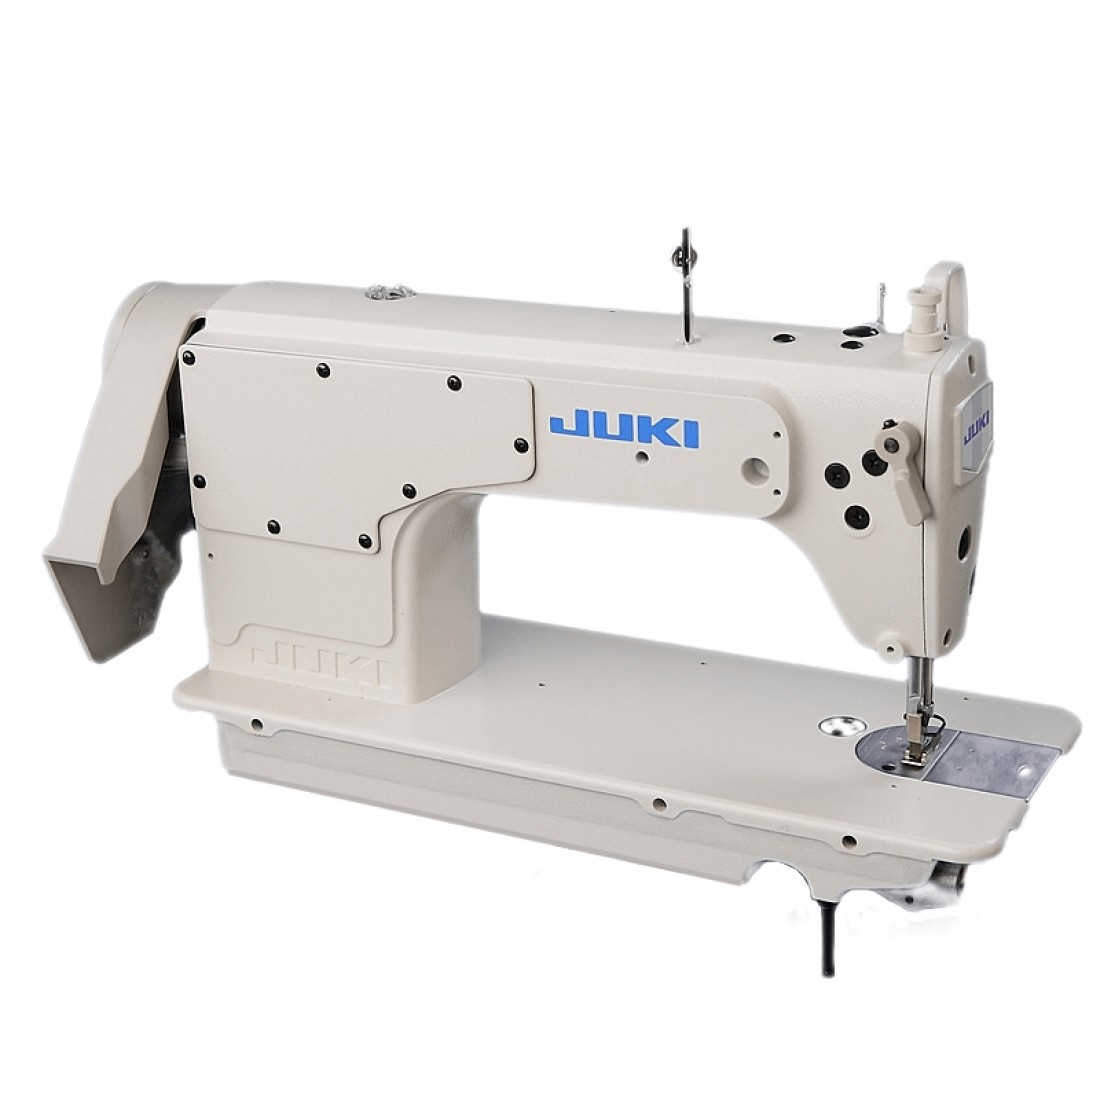 Промышленная машинка juki. Швейная машина Juki DDL-8700. Швейная машинка Juki DDL 8700. Промышленная швейная машина Juki DDL-8700. Промышленная машинка Джуки DDL 8700.